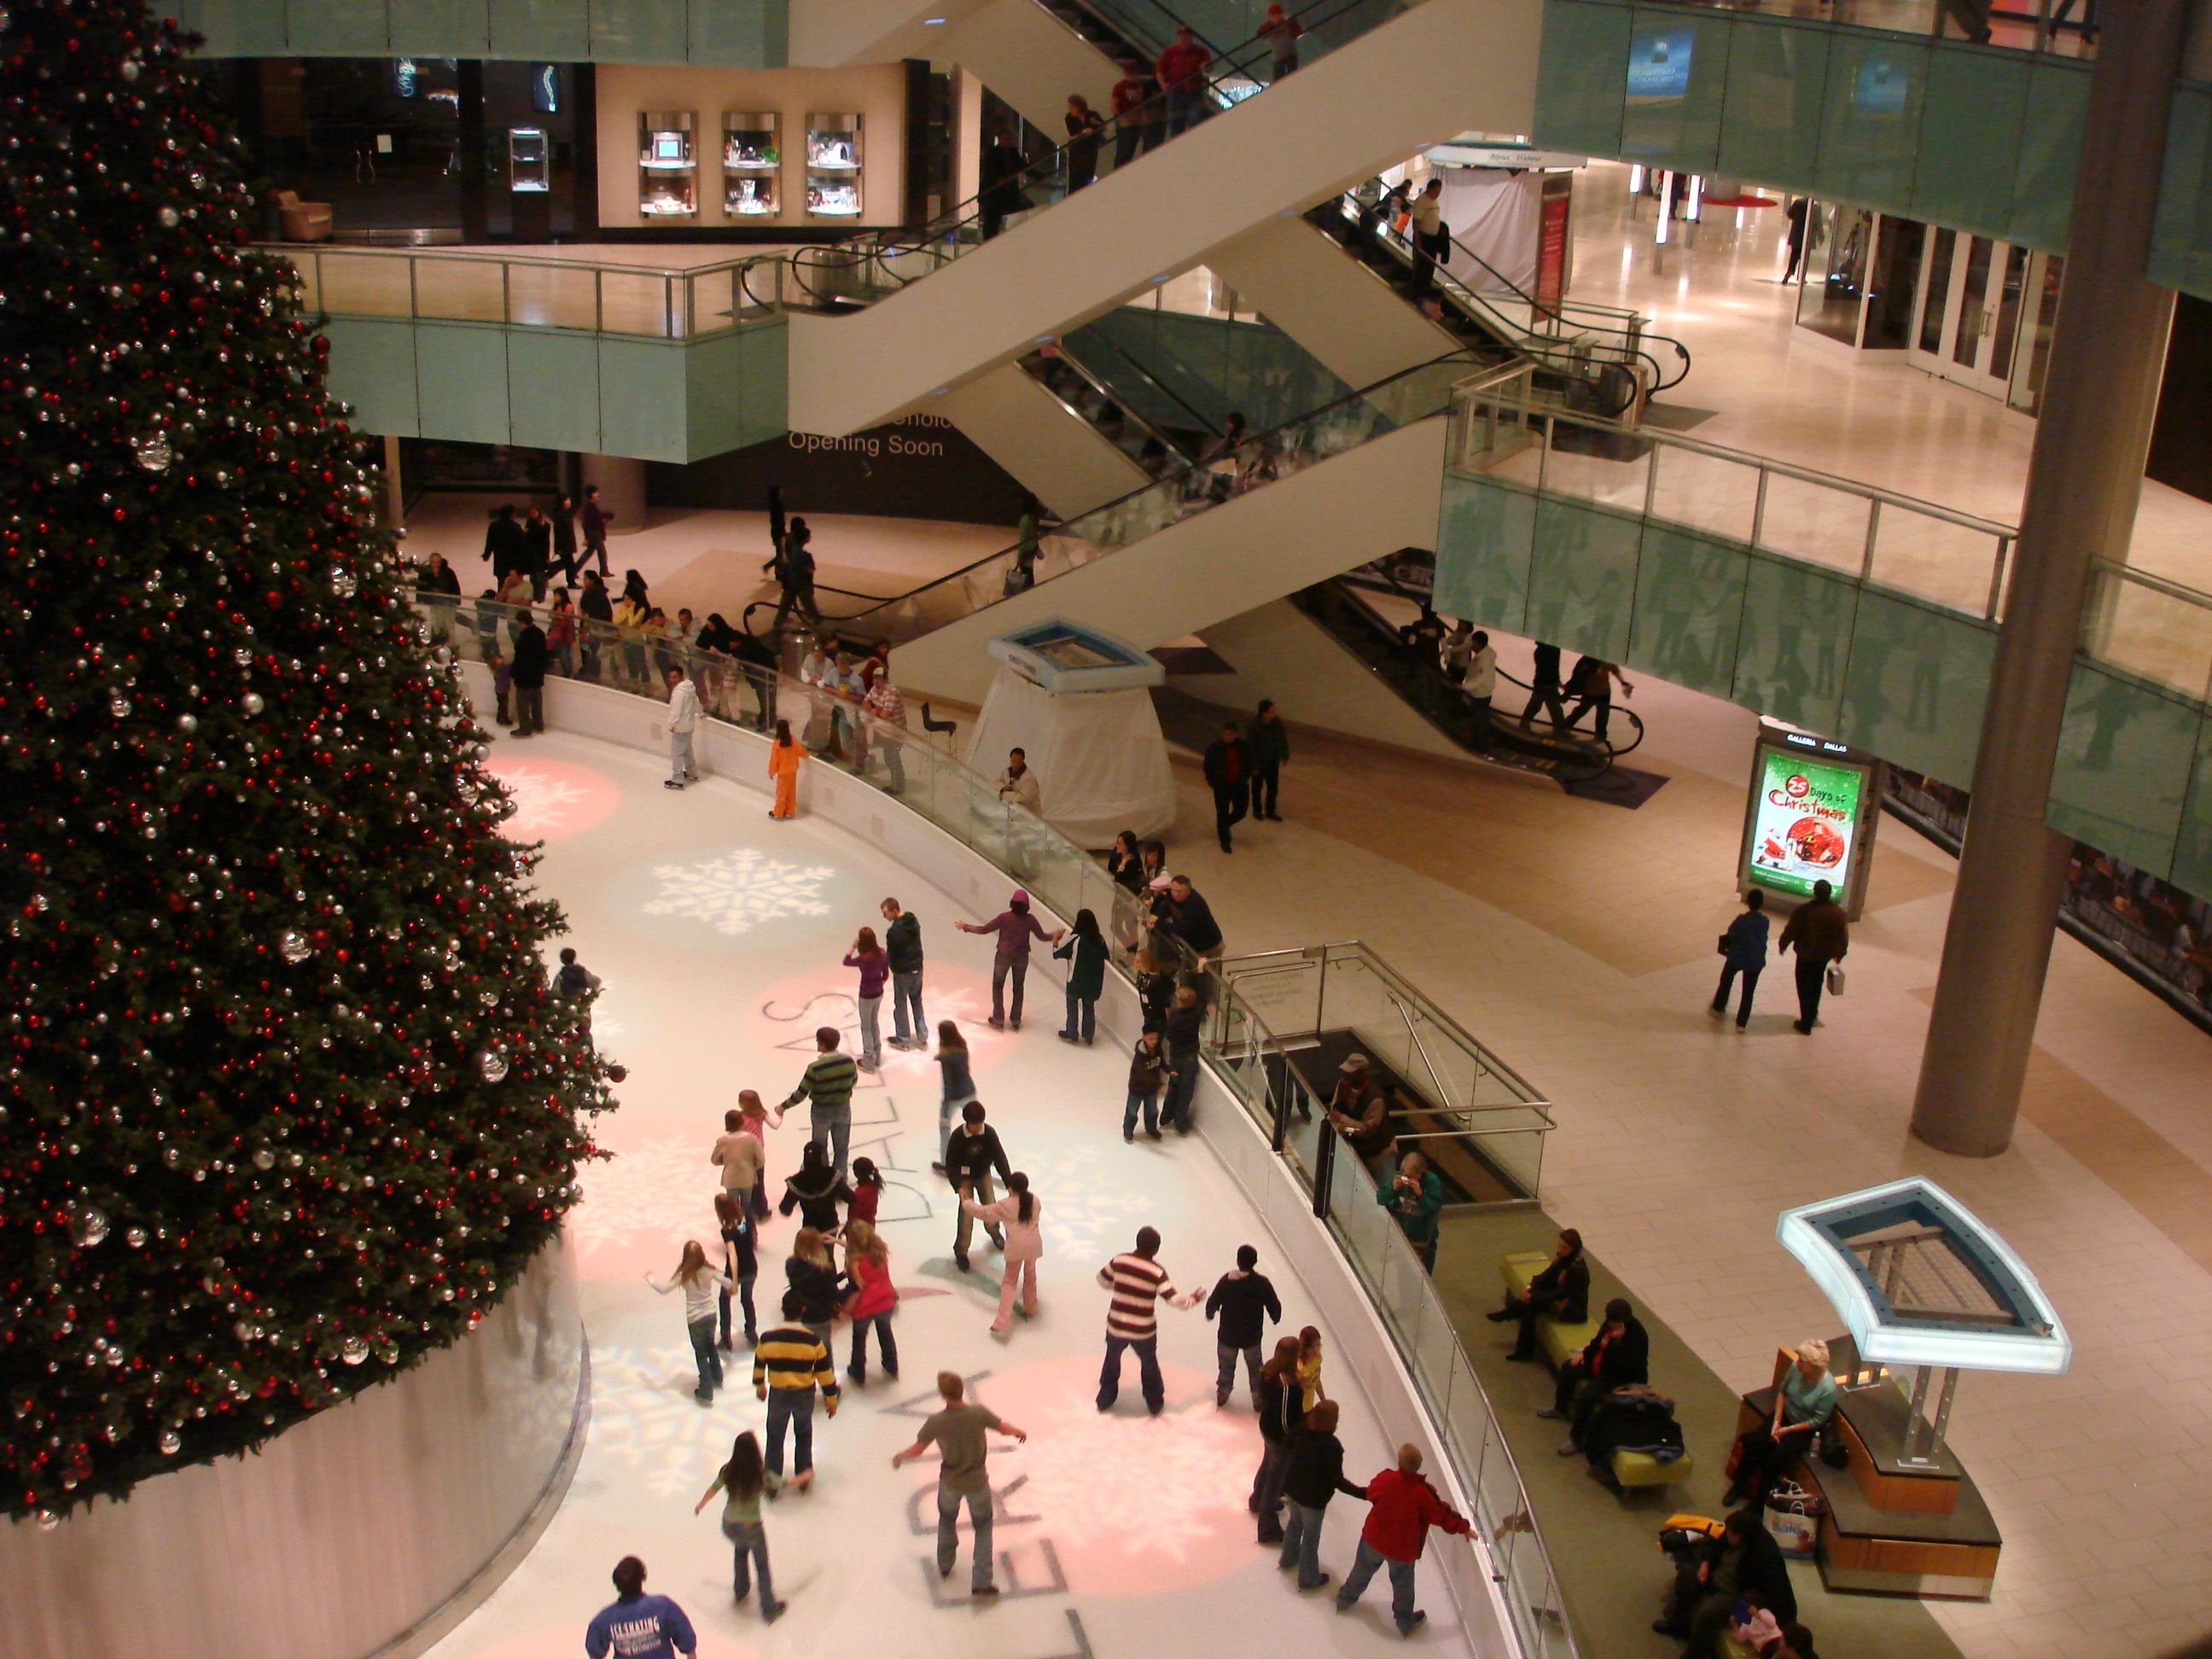 Galleria Dallas - Super regional mall in Dallas, Texas, USA 